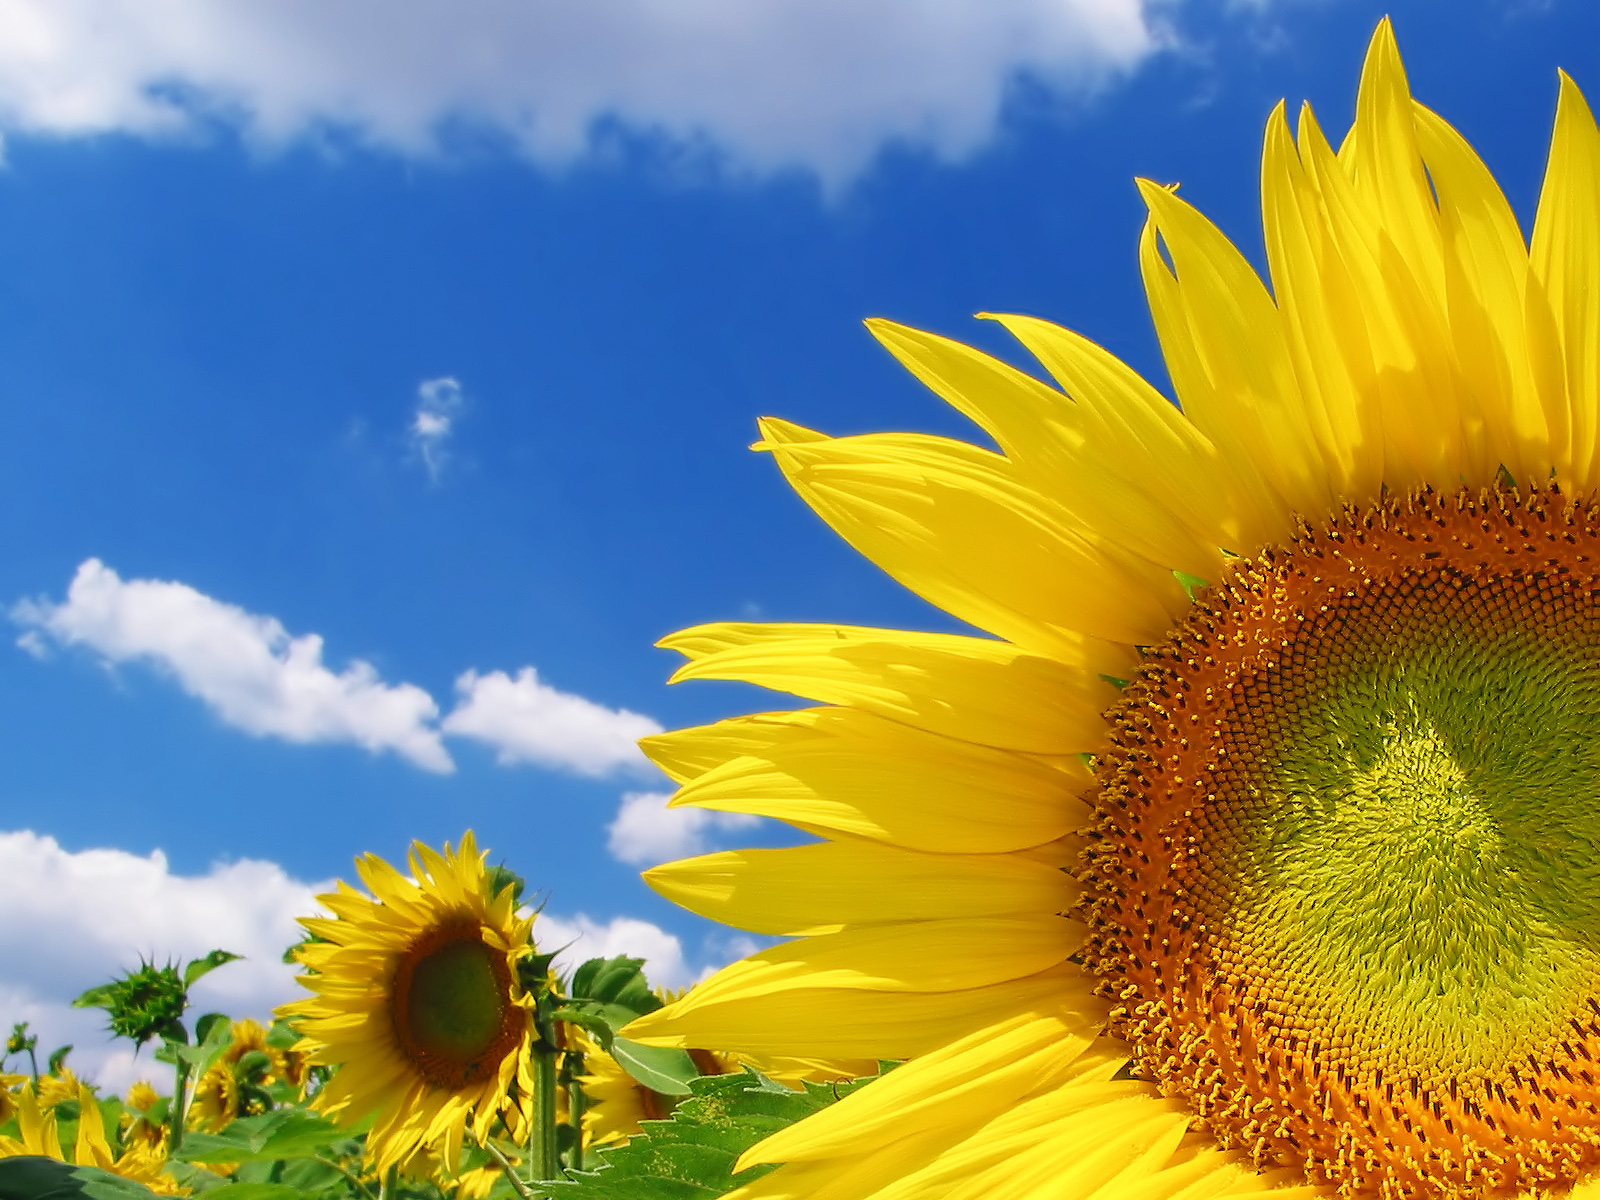 Sunflower_1600.jpg